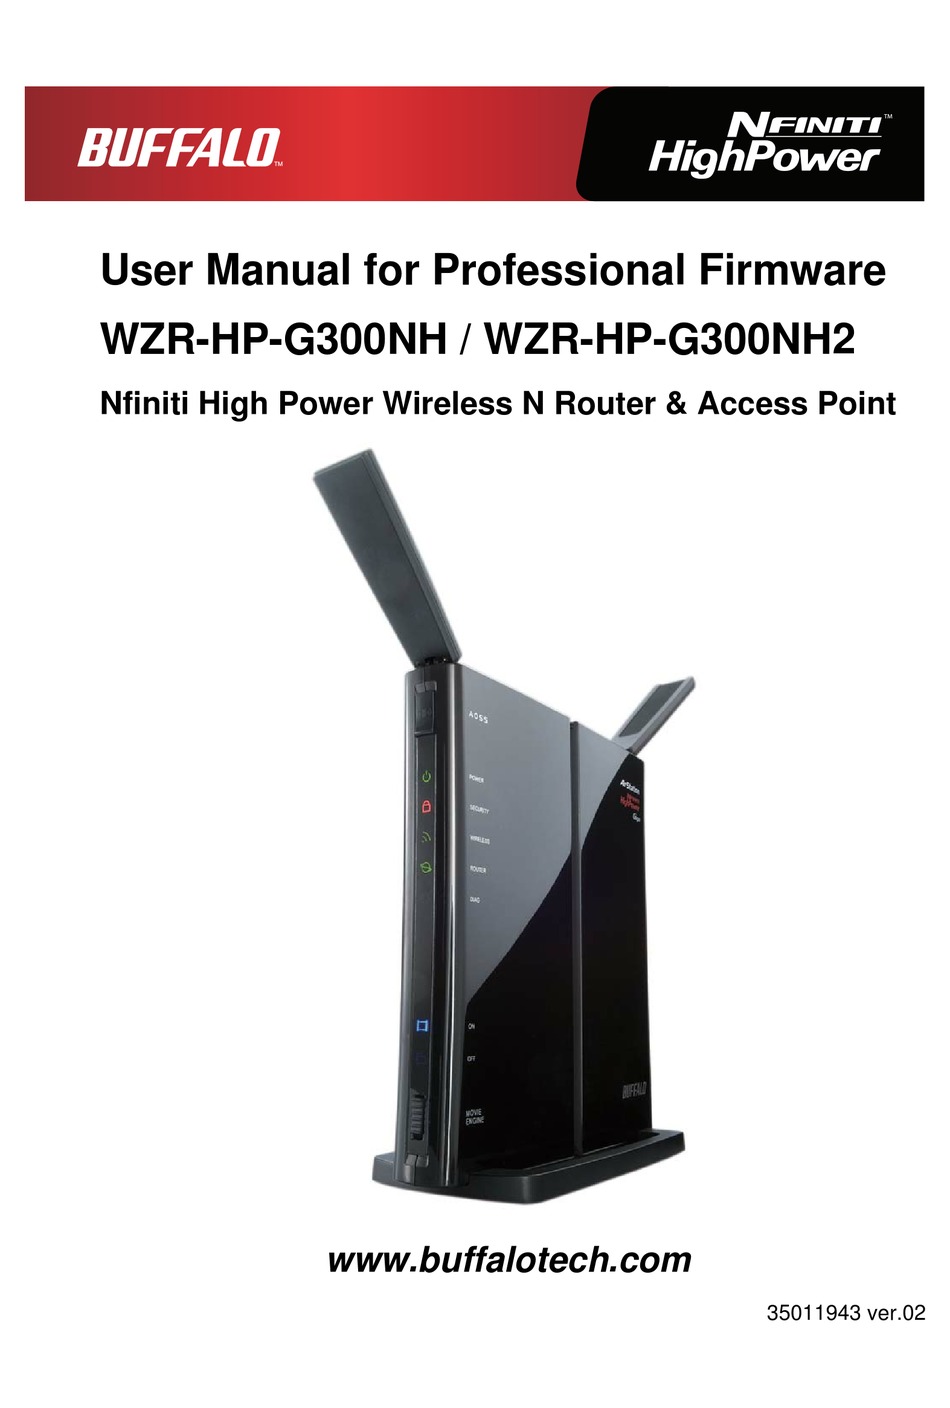 BUFFALO NFINITI HIGH POWER WZR-HP-G300NH USER MANUAL Pdf Download |